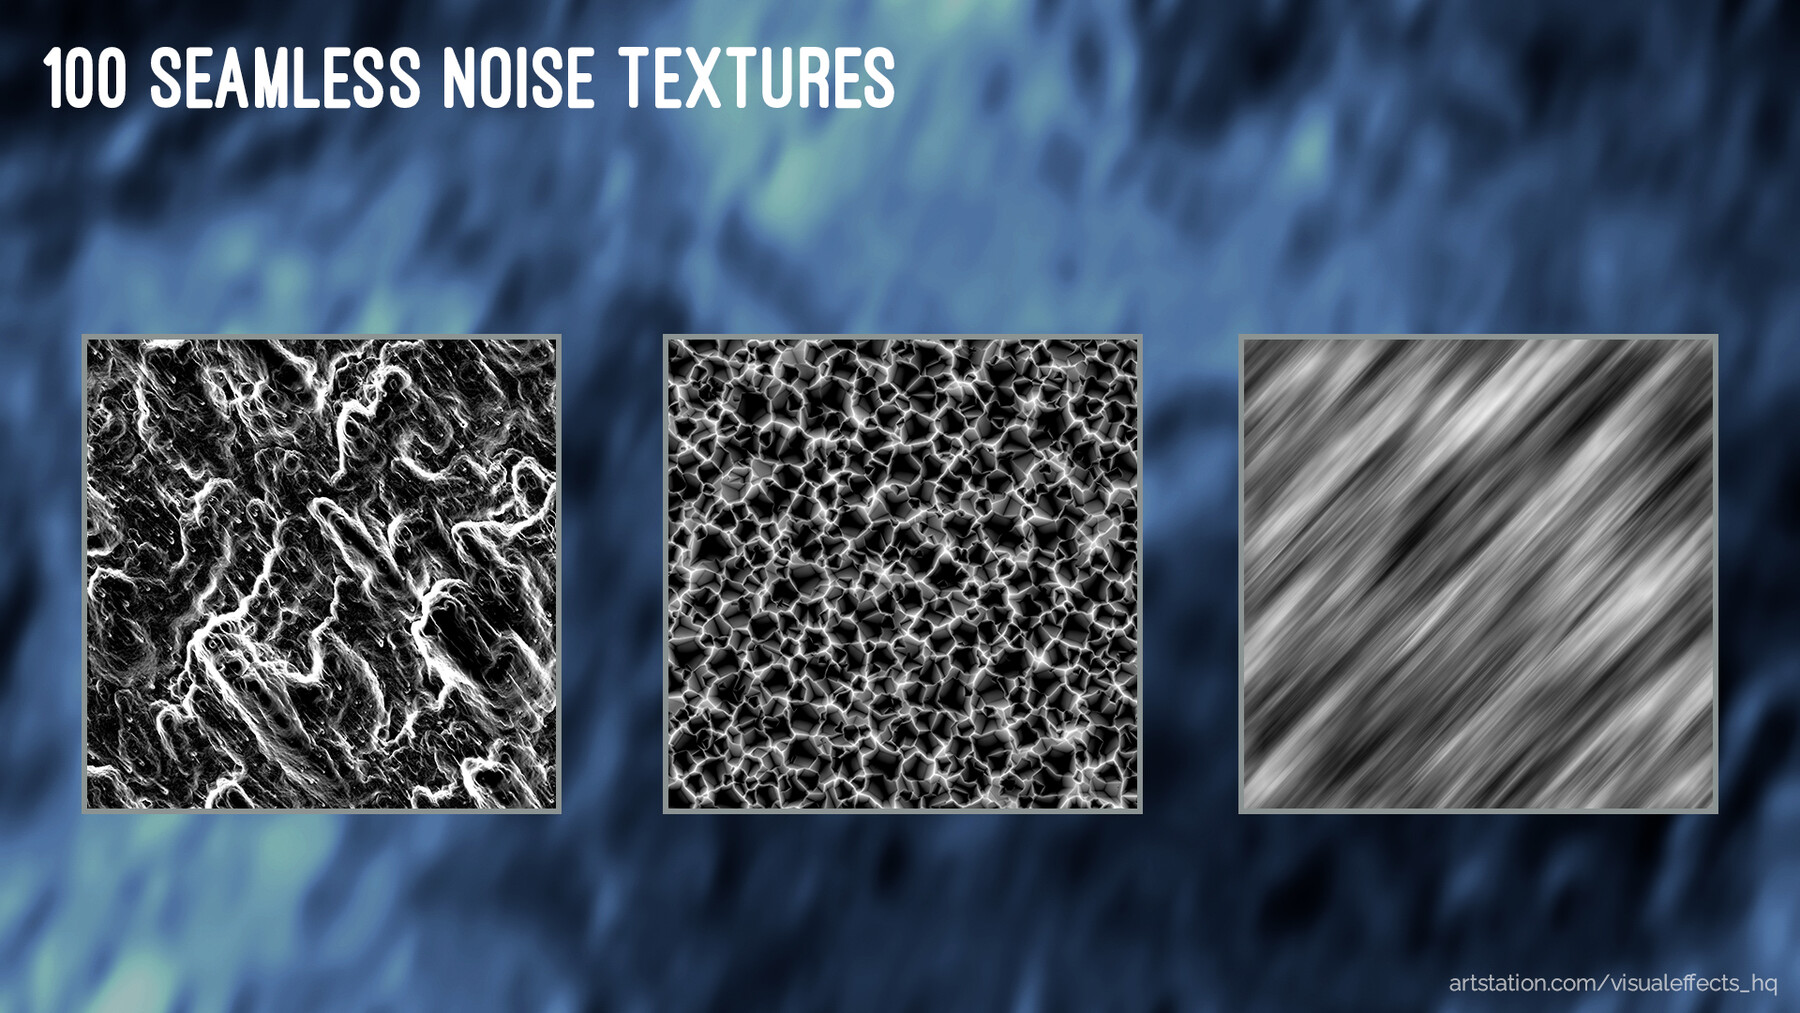 ArtStation - 100 Seamless Noise Textures for VFX